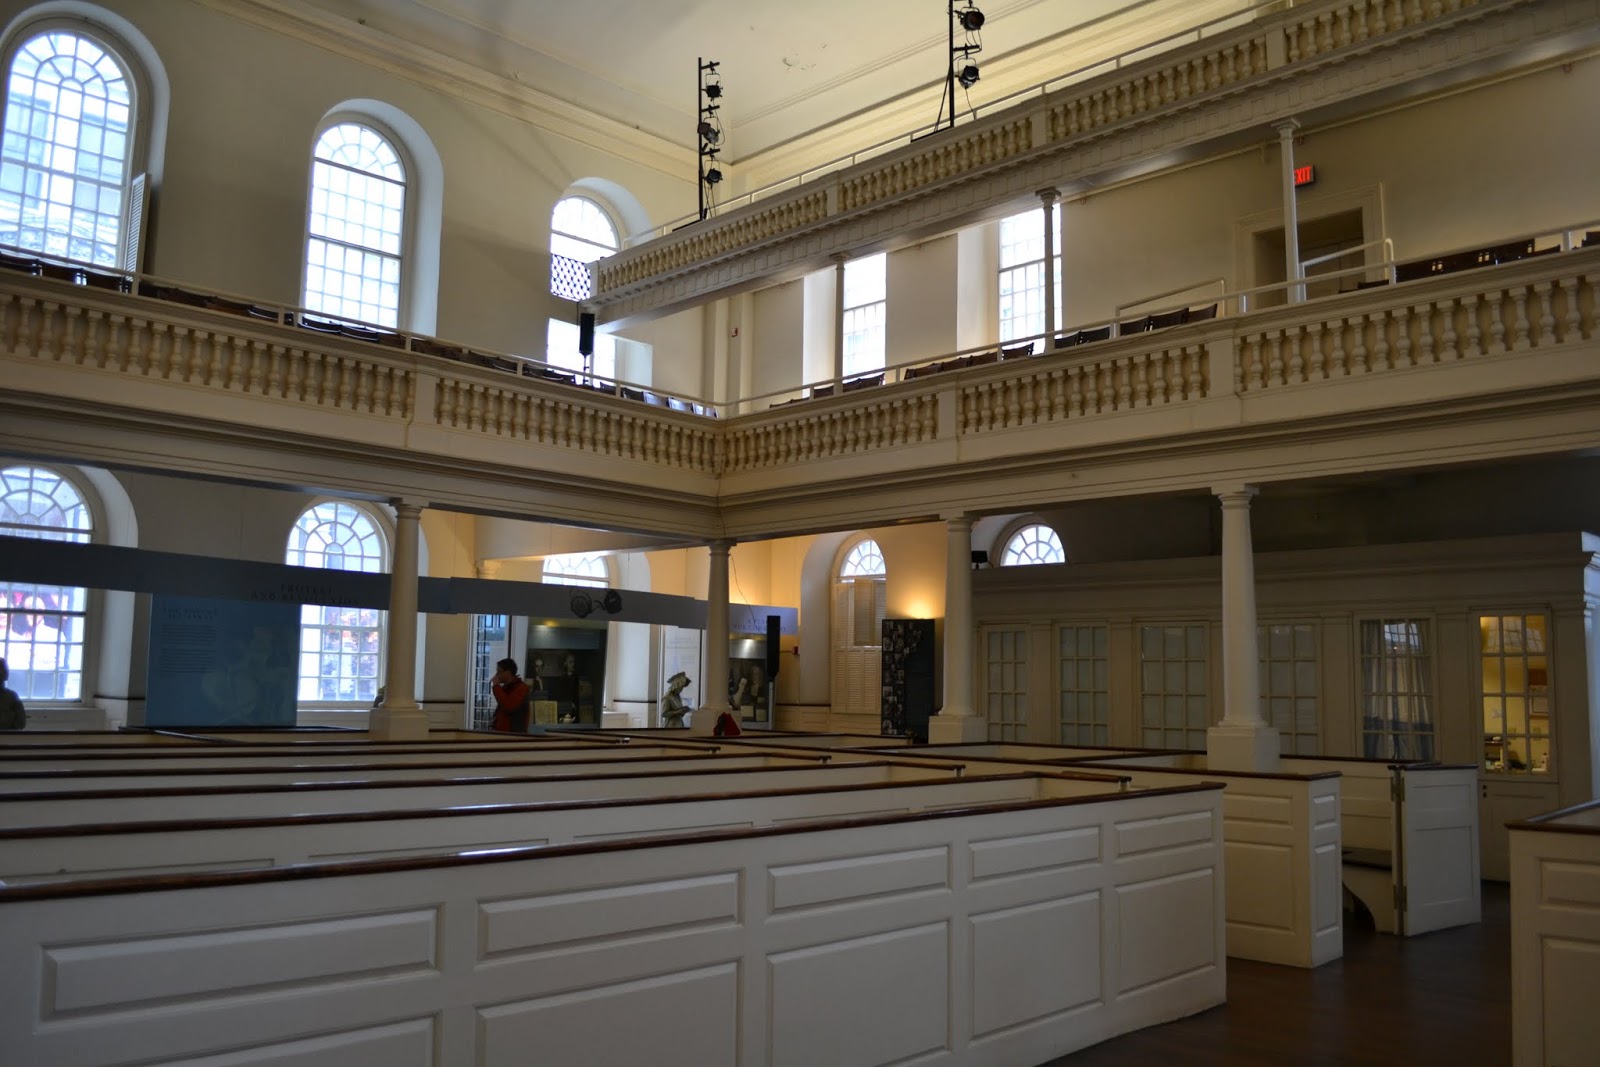 Старый Дом собраний, Бостон, Массачусетс(Old South Meeting House, Boston, MA)